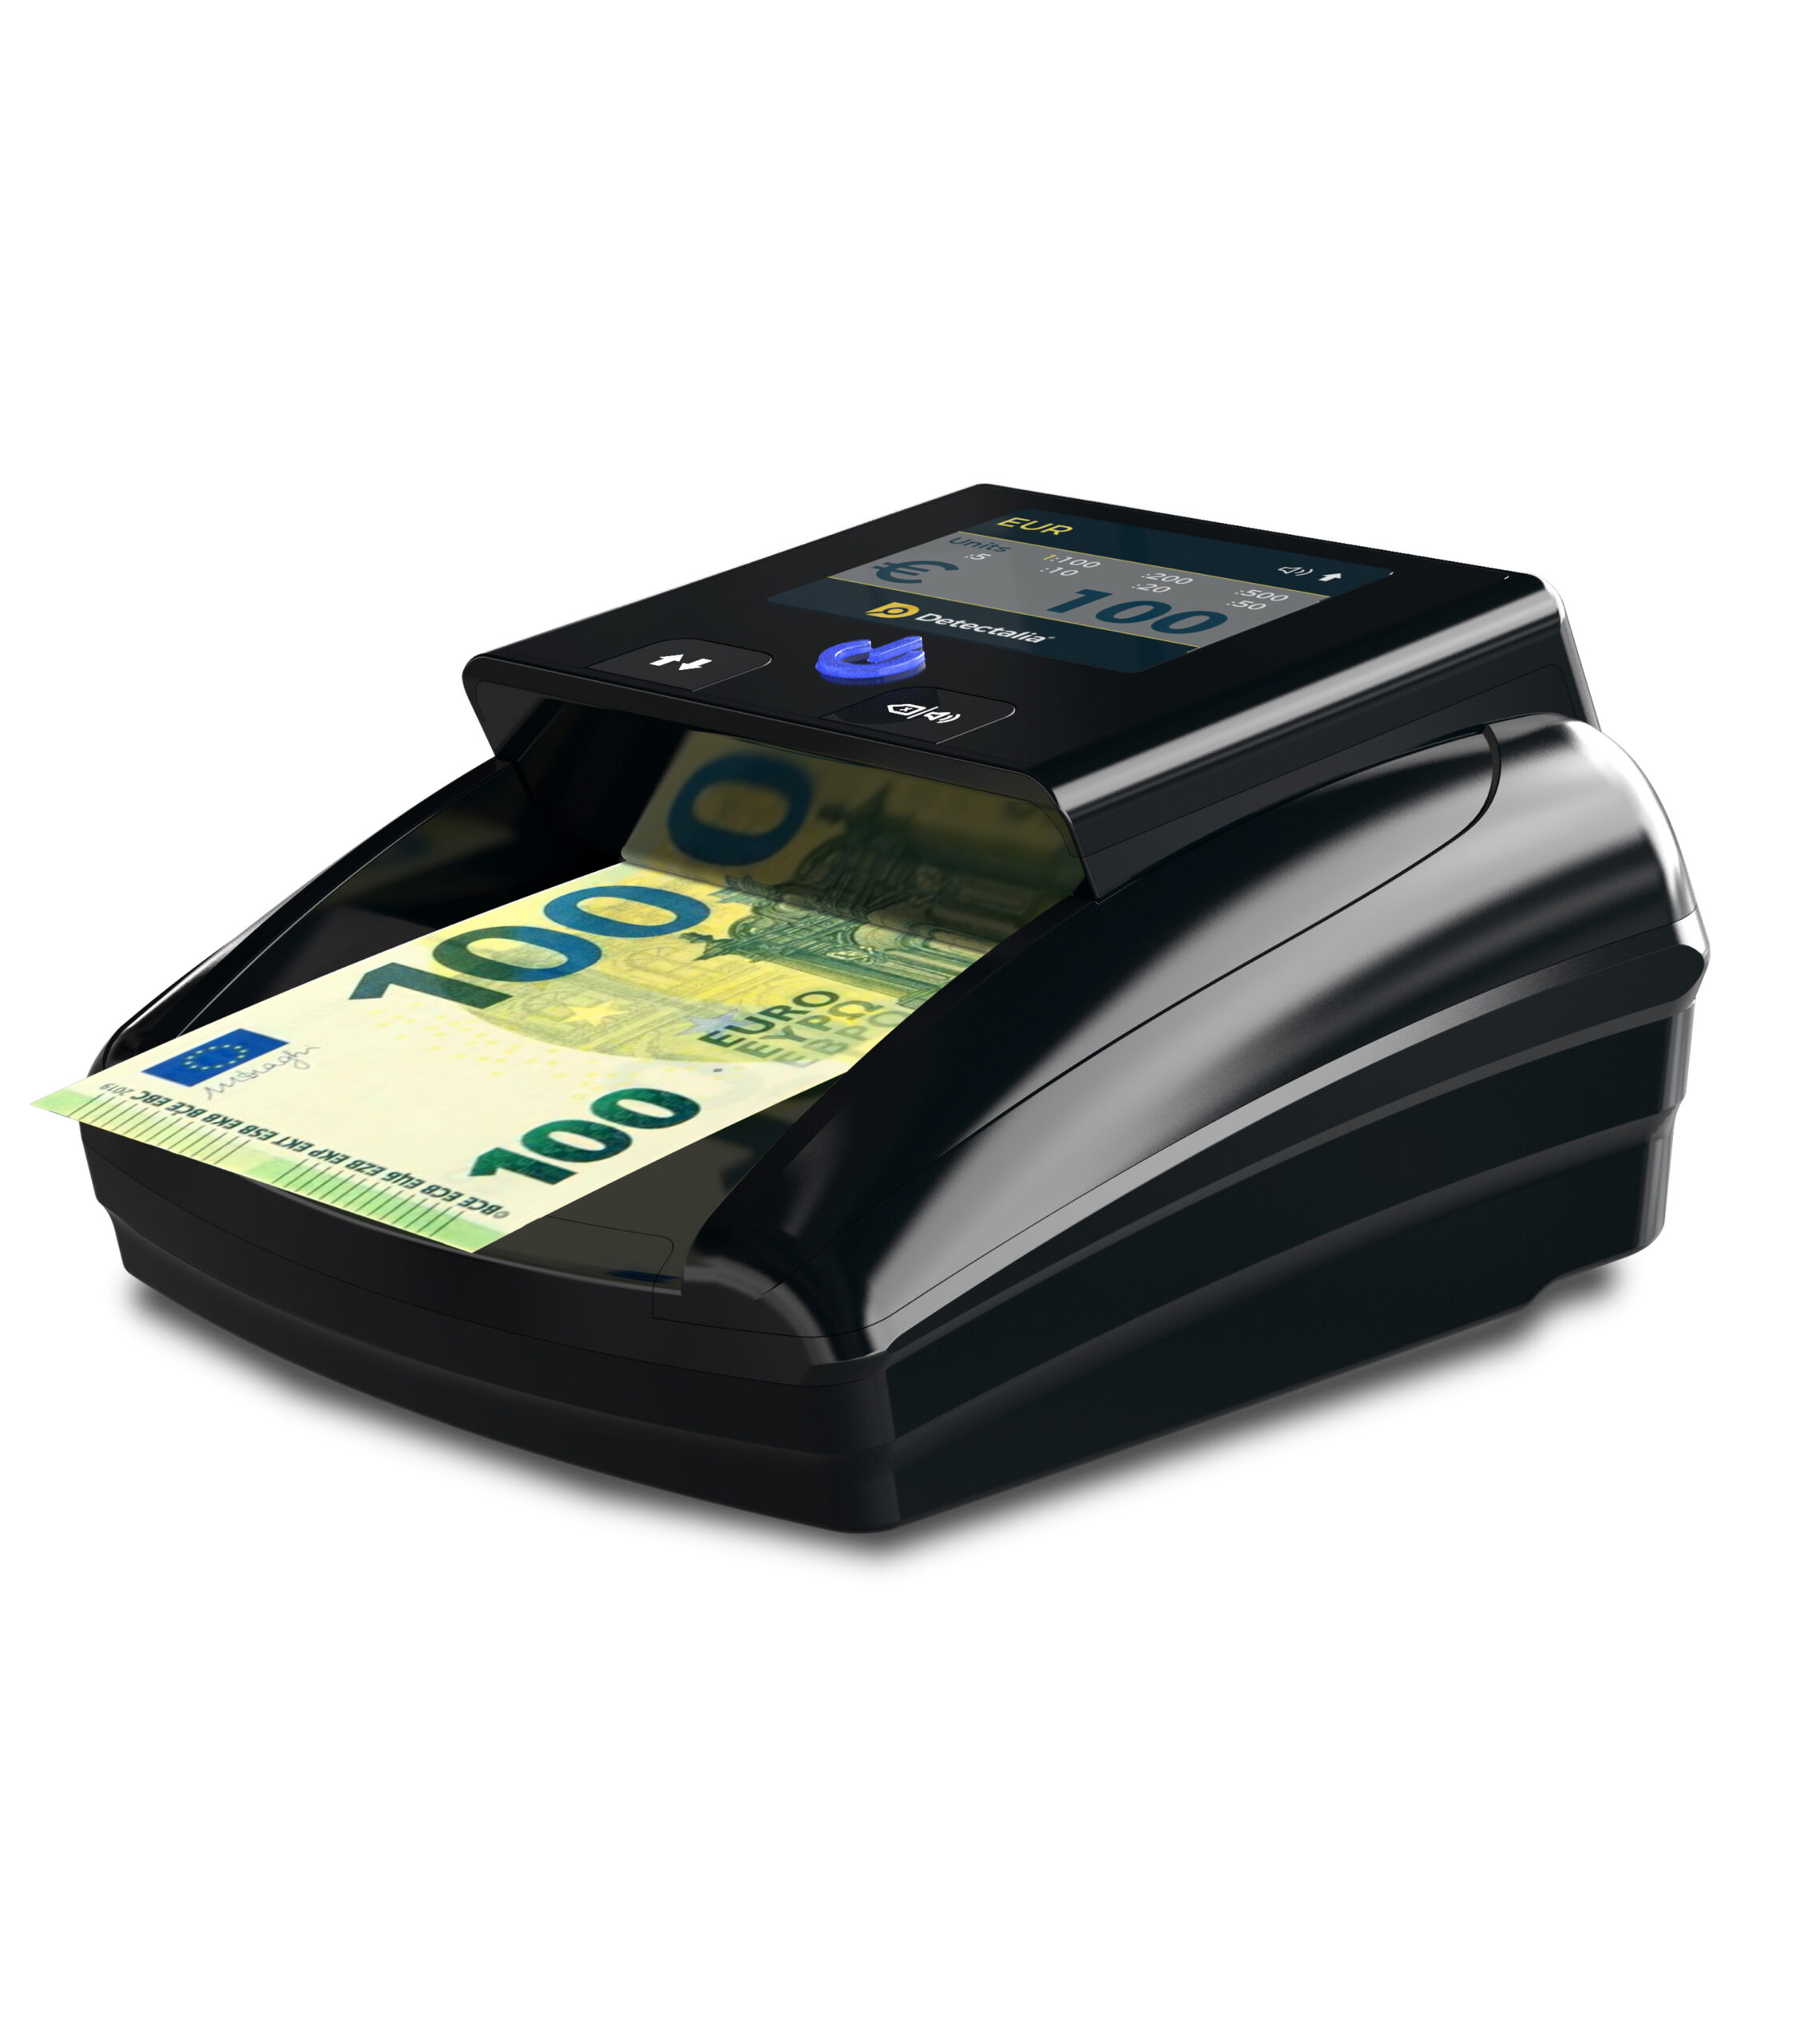 Macchinetta controllo banconote false, verifica e rileva soldi